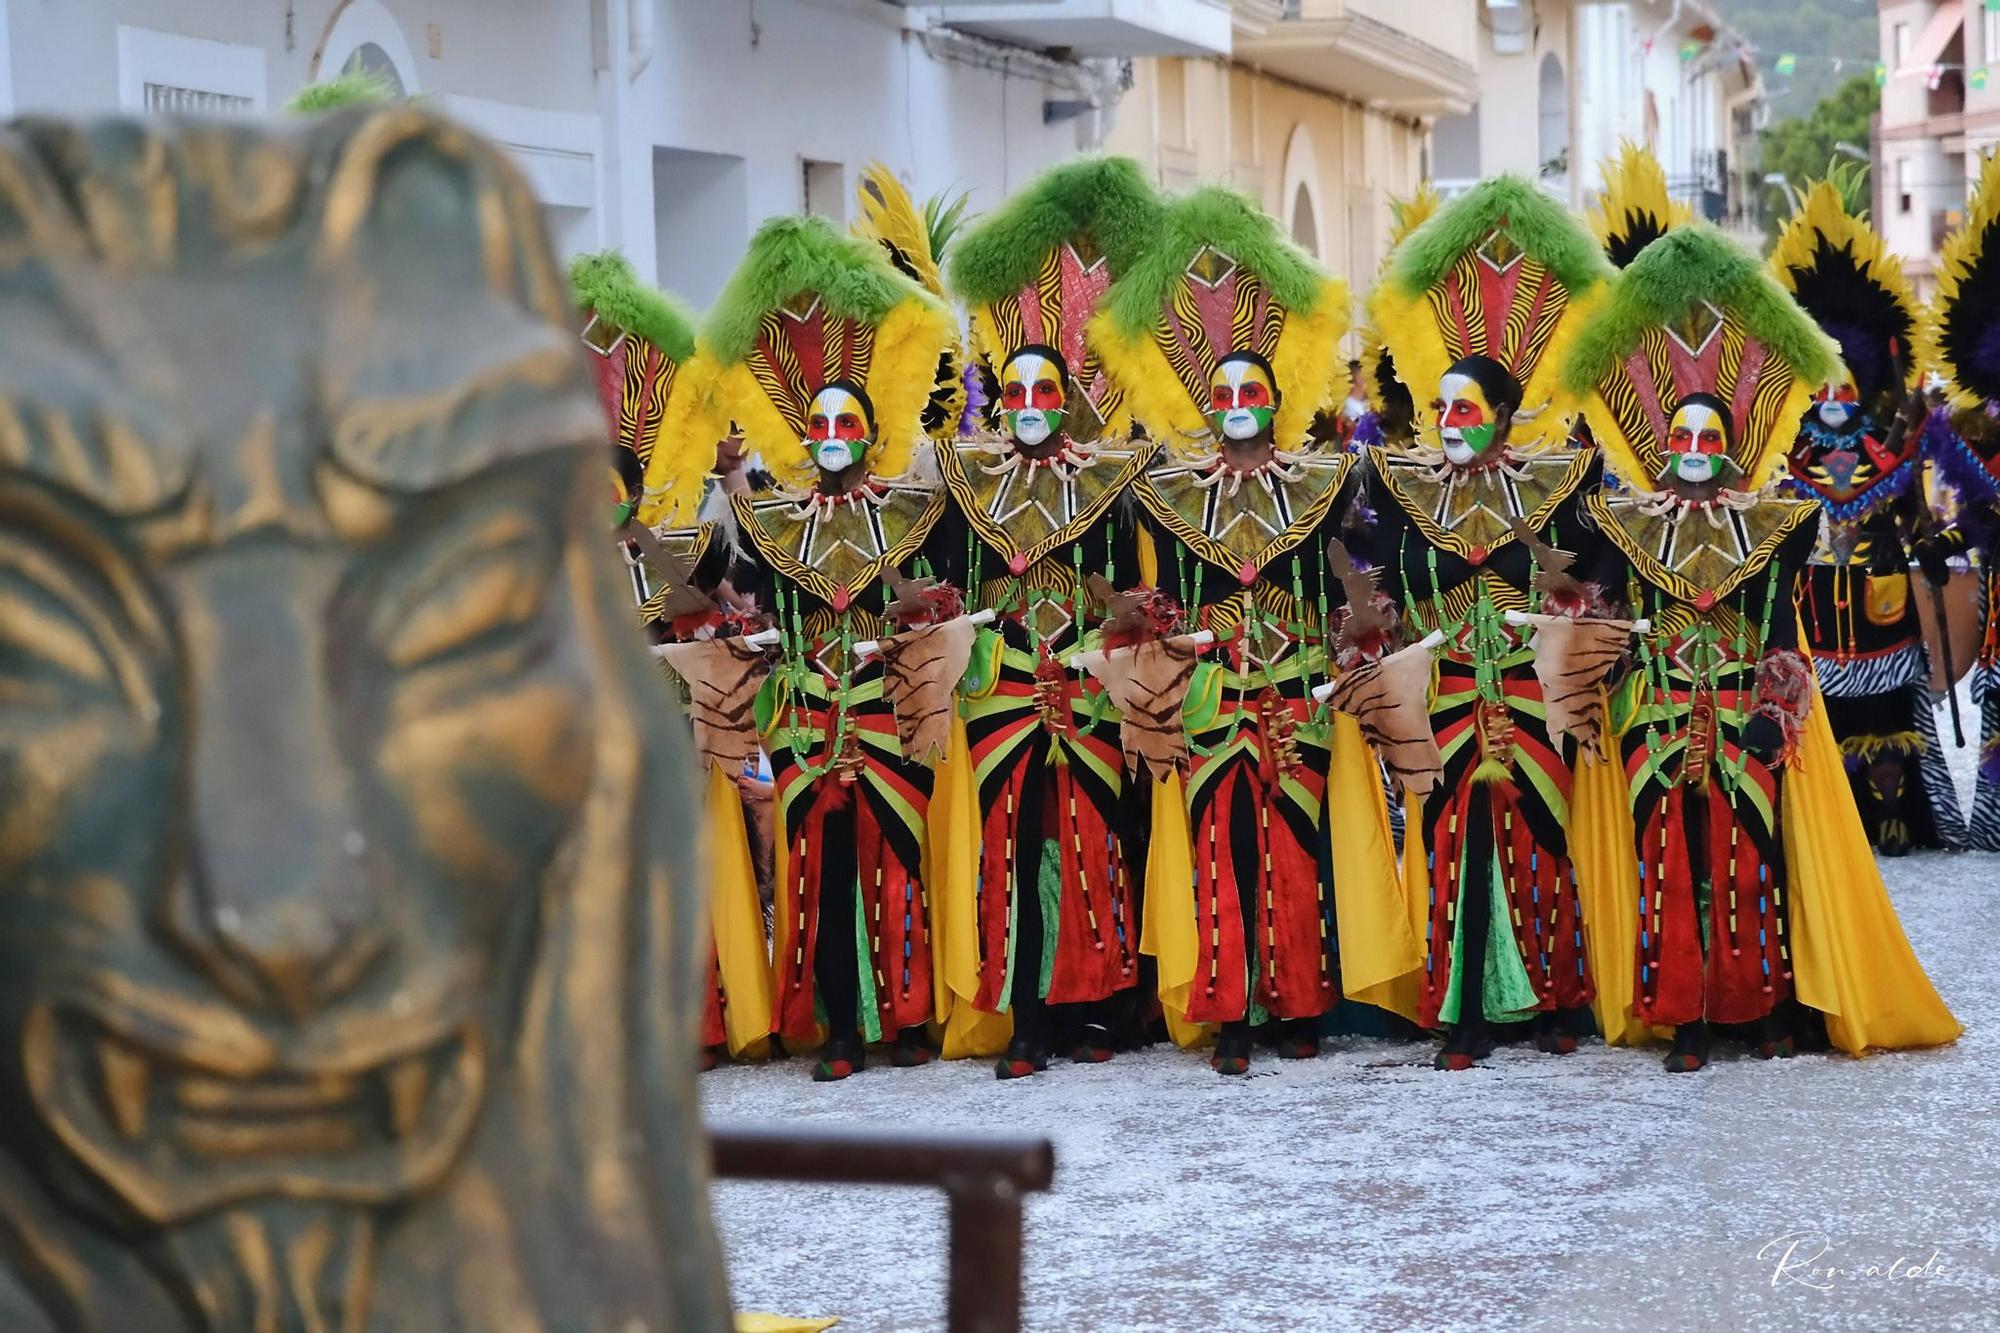 Les millors fotos de les Festes de Moros i Cristians de Xeresa